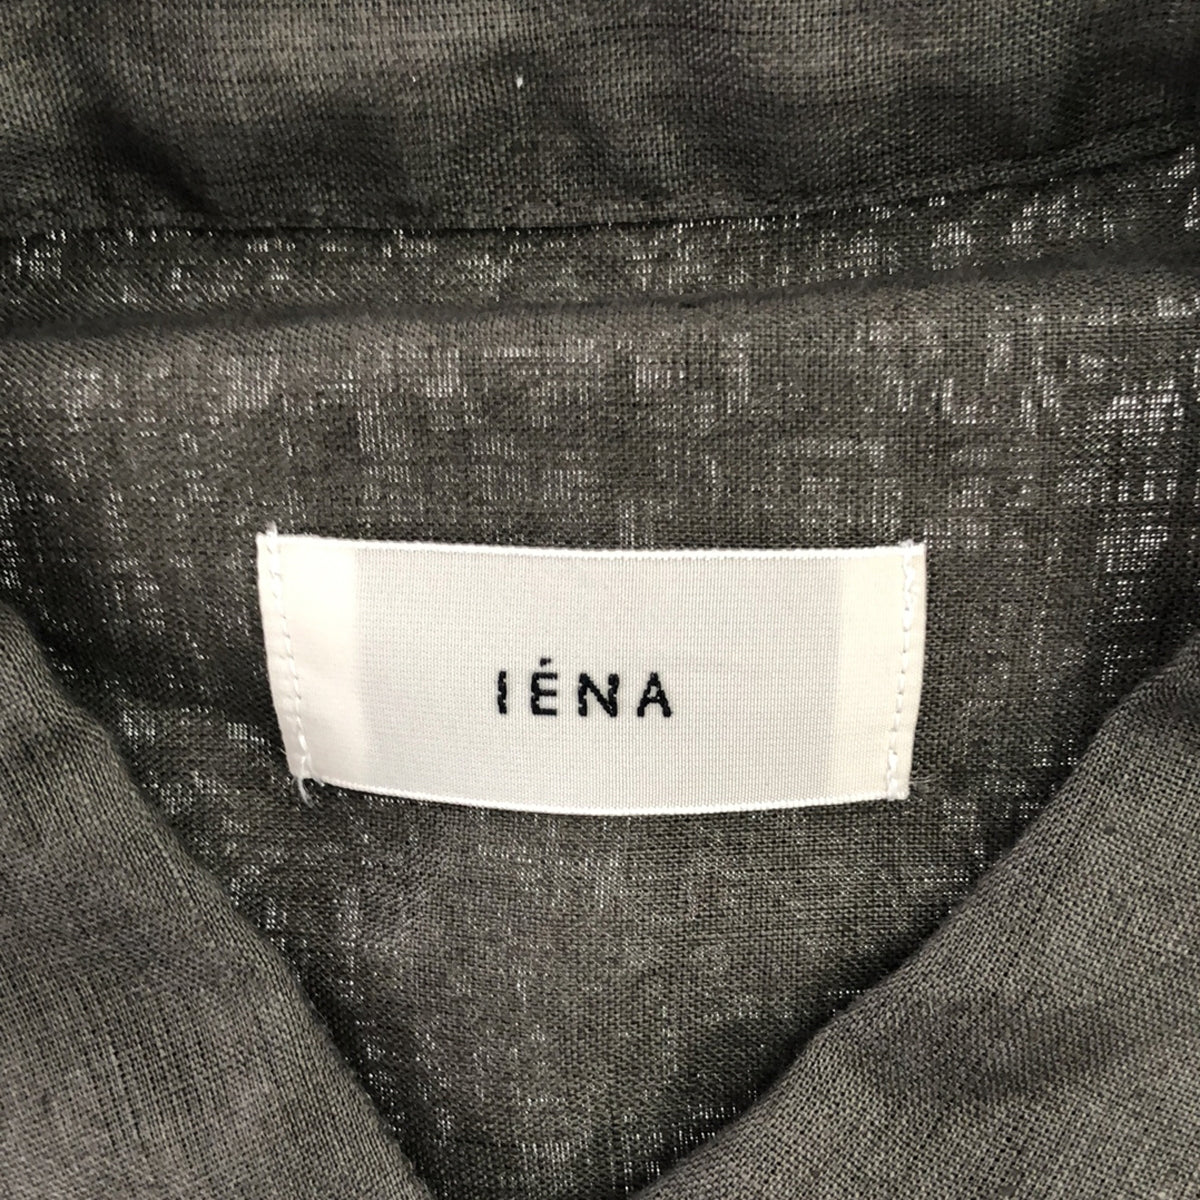 IENA / イエナ | フレンチリネンオーバーシャツ | F |